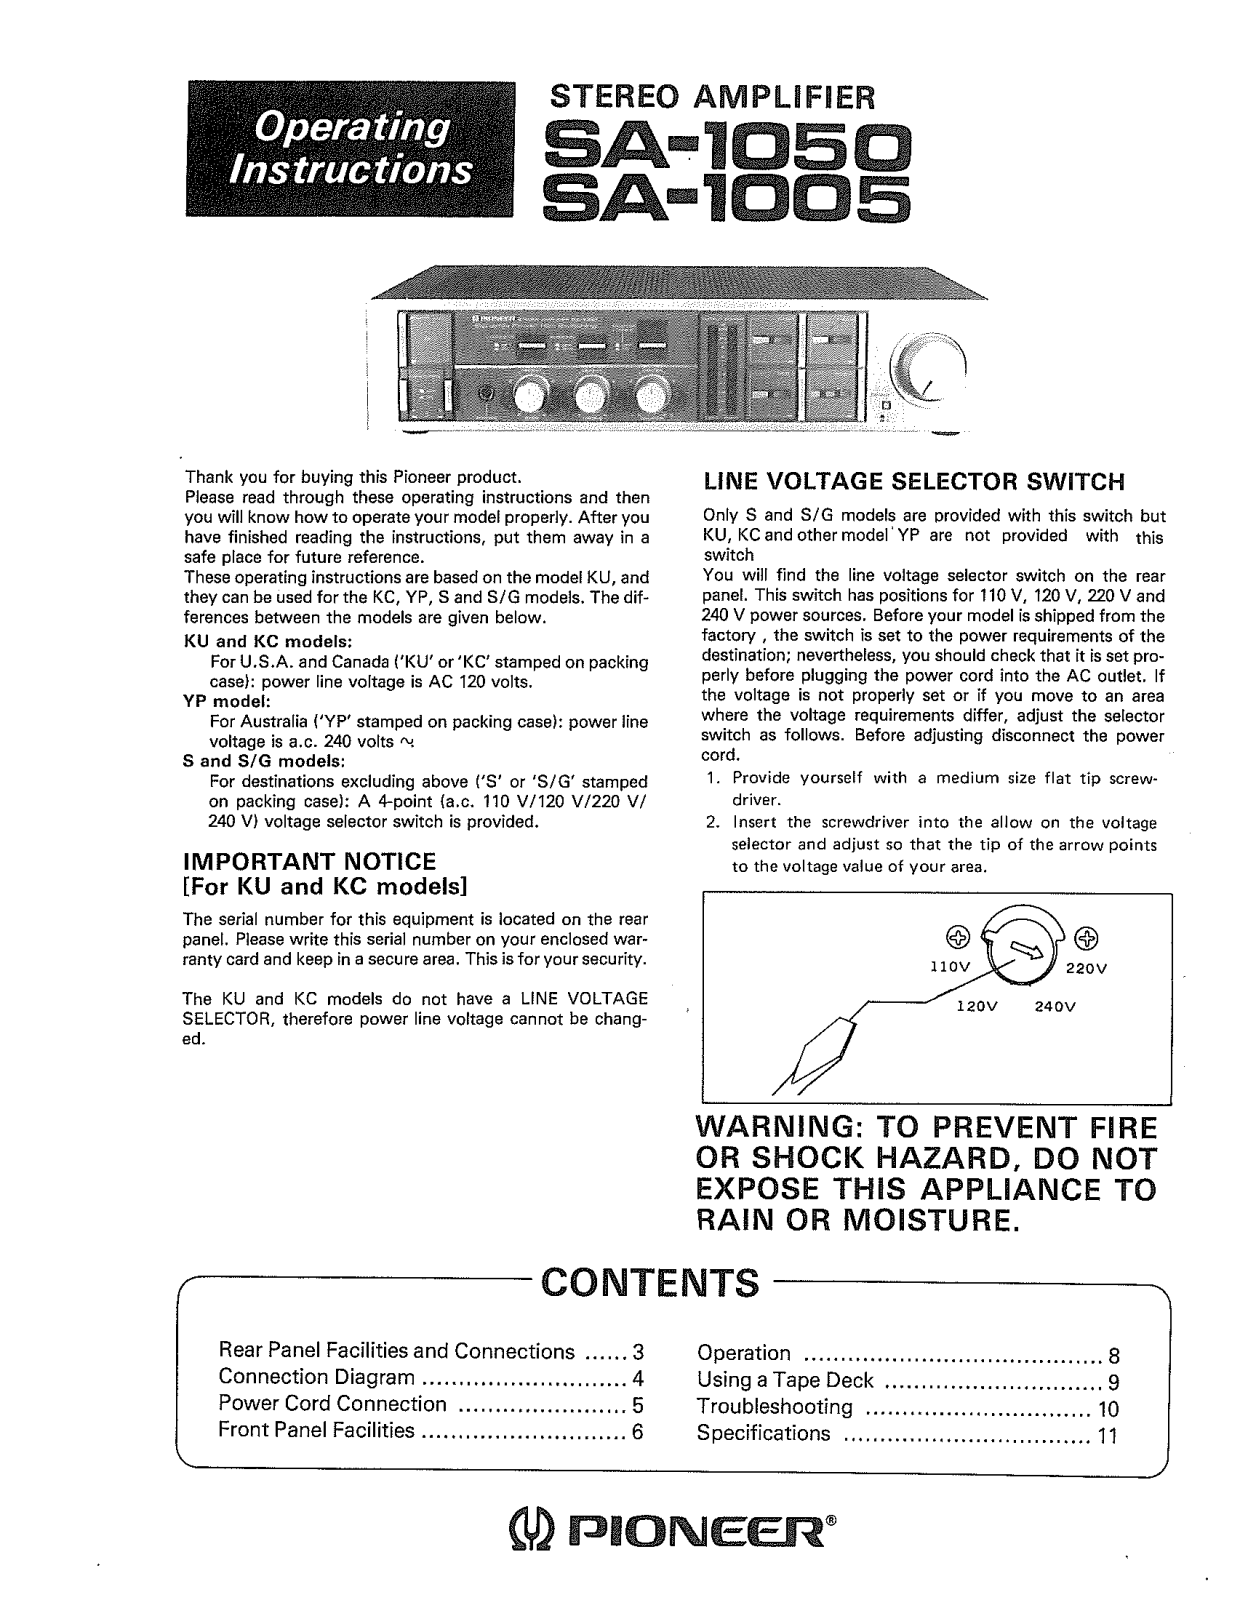 Pioneer SA-1050, SA-1005 Owners Manual